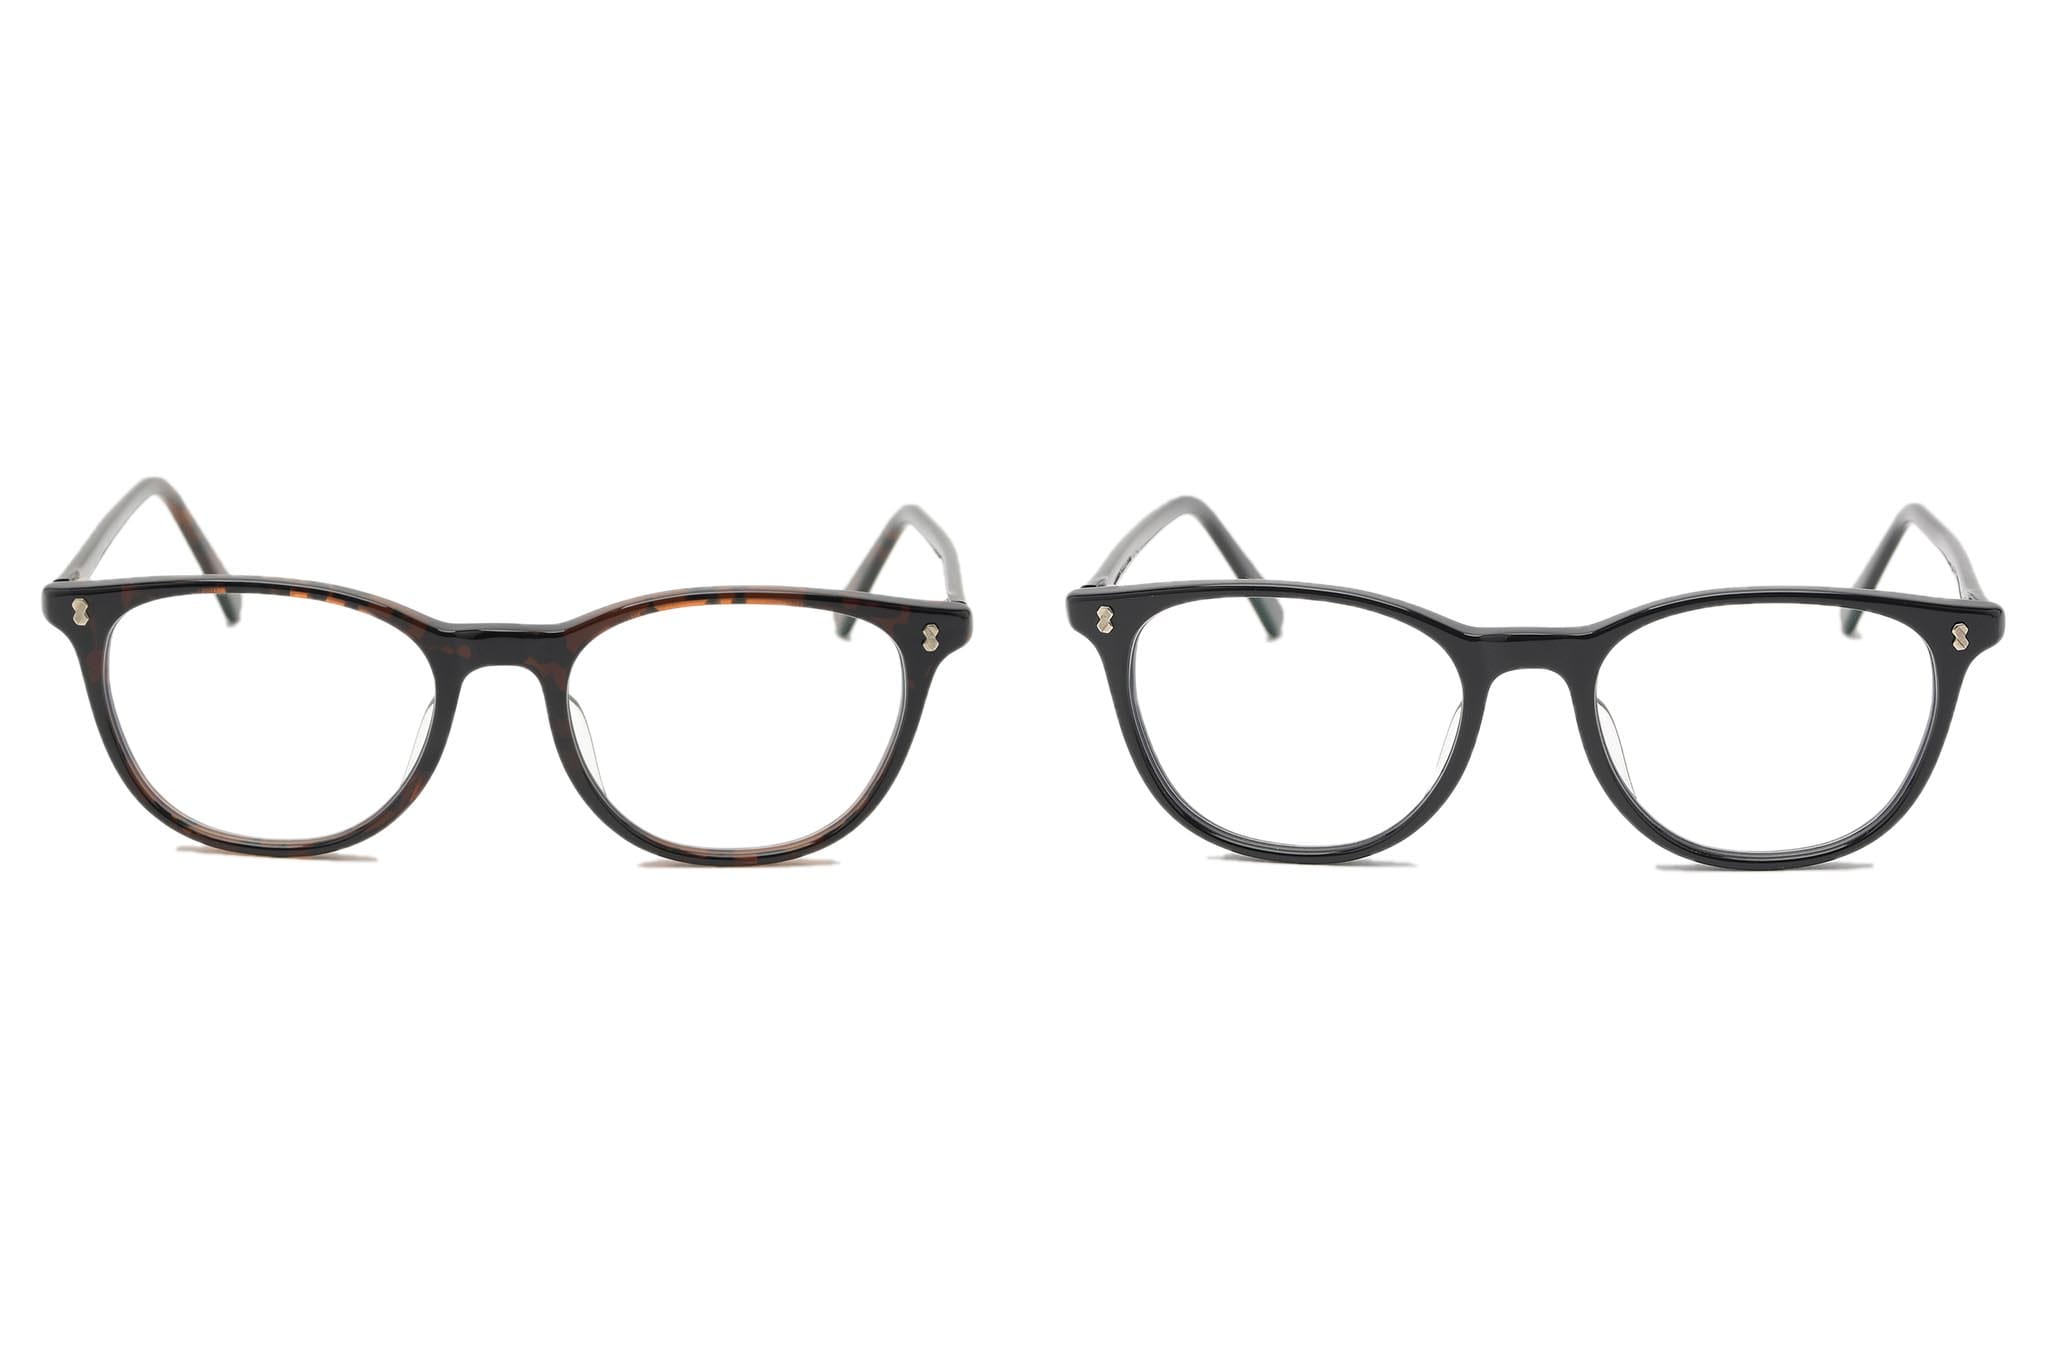 SOPHNET. x 金子眼鏡推出全新2018 春夏眼鏡系列| Hypebeast